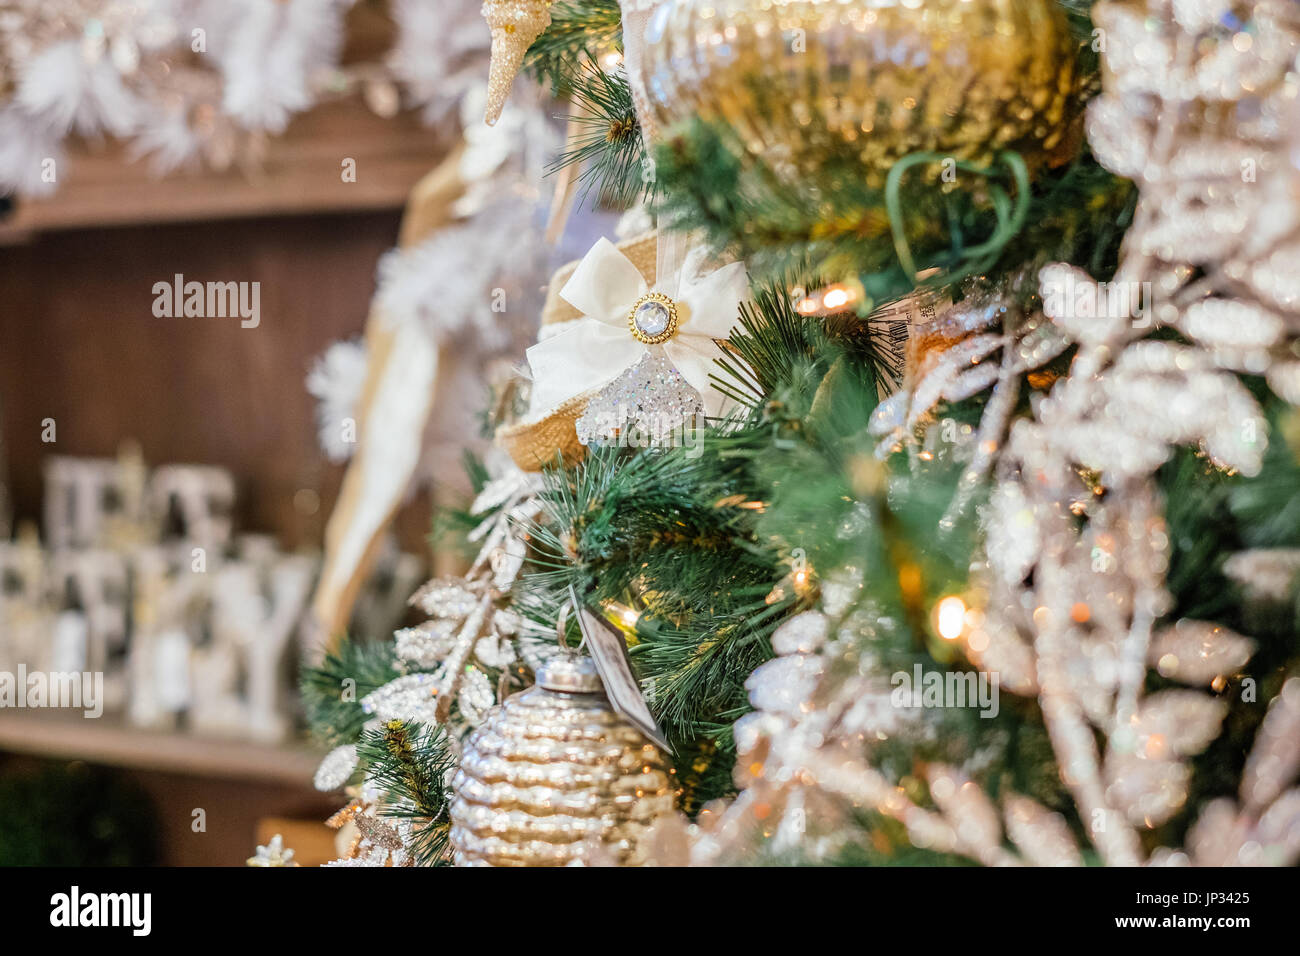 Christbaumschmuck und Lampen hängen an einem traditionellen Weihnachtsbaum während der Weihnachtszeit. Stockfoto